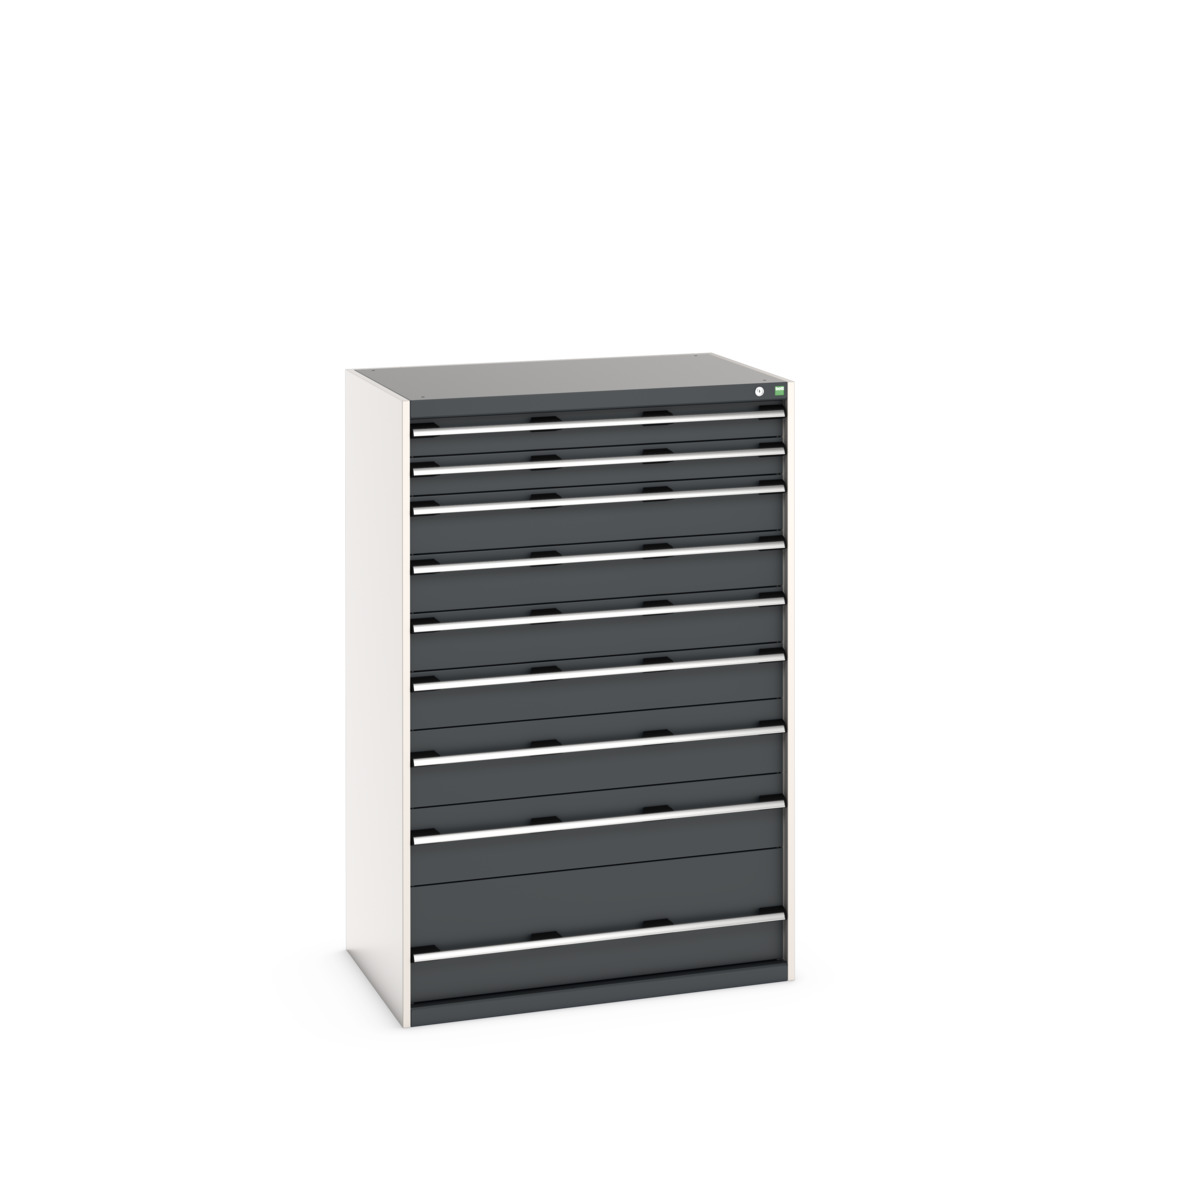 40029036.19V - cubio drawer cabinet